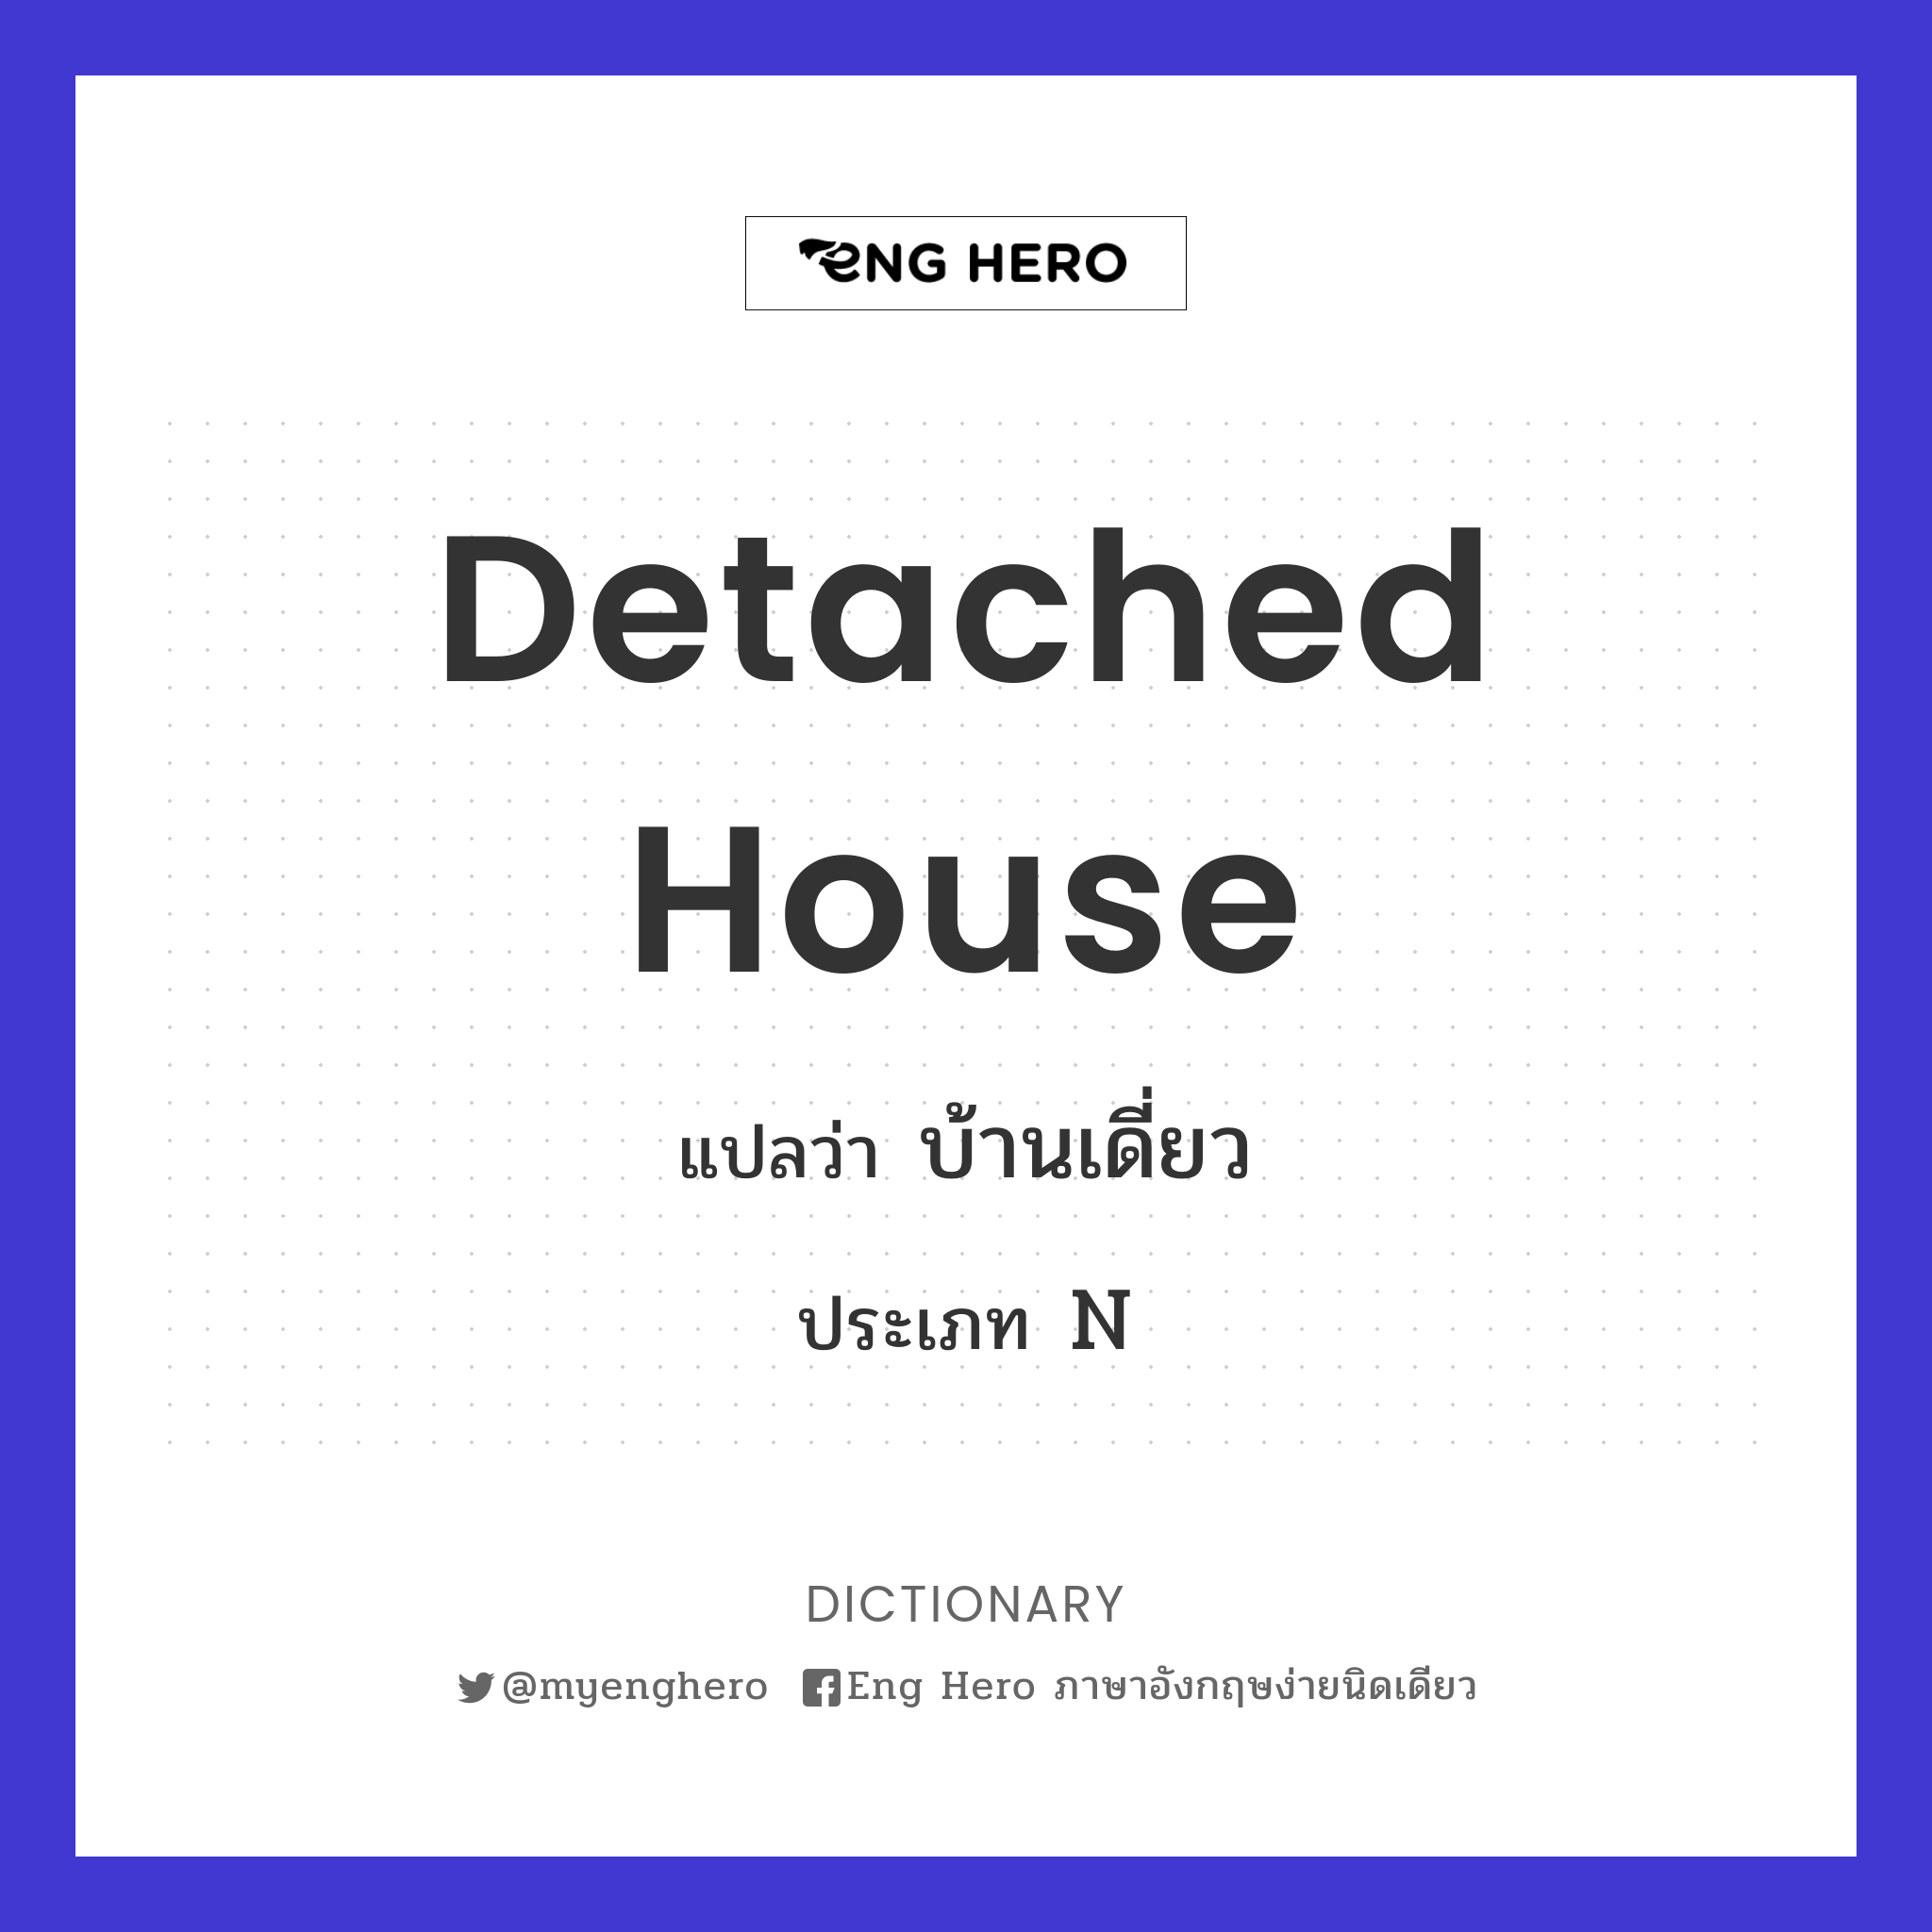 detached house